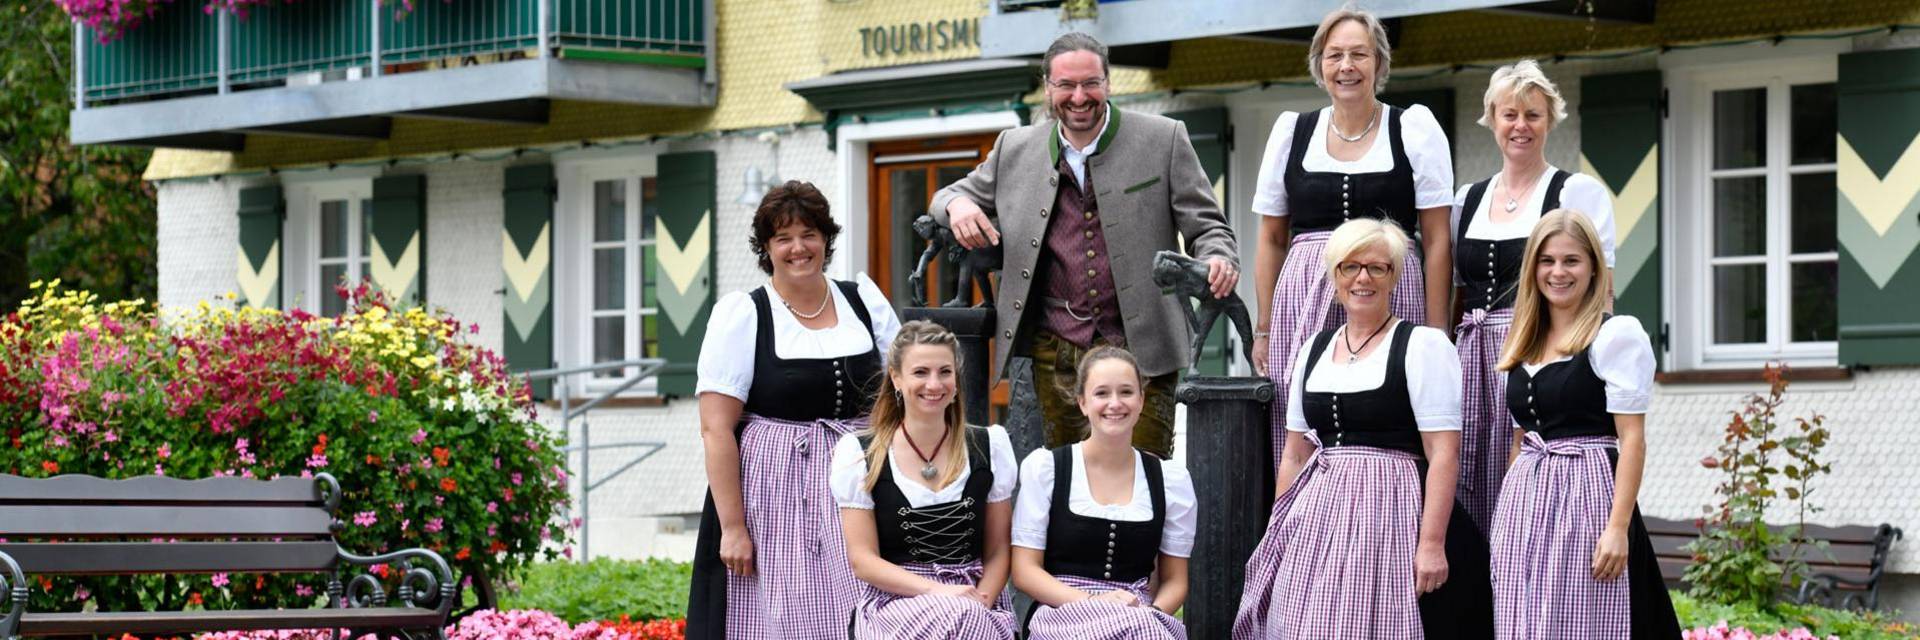 Scheidegg-Tourismus Team